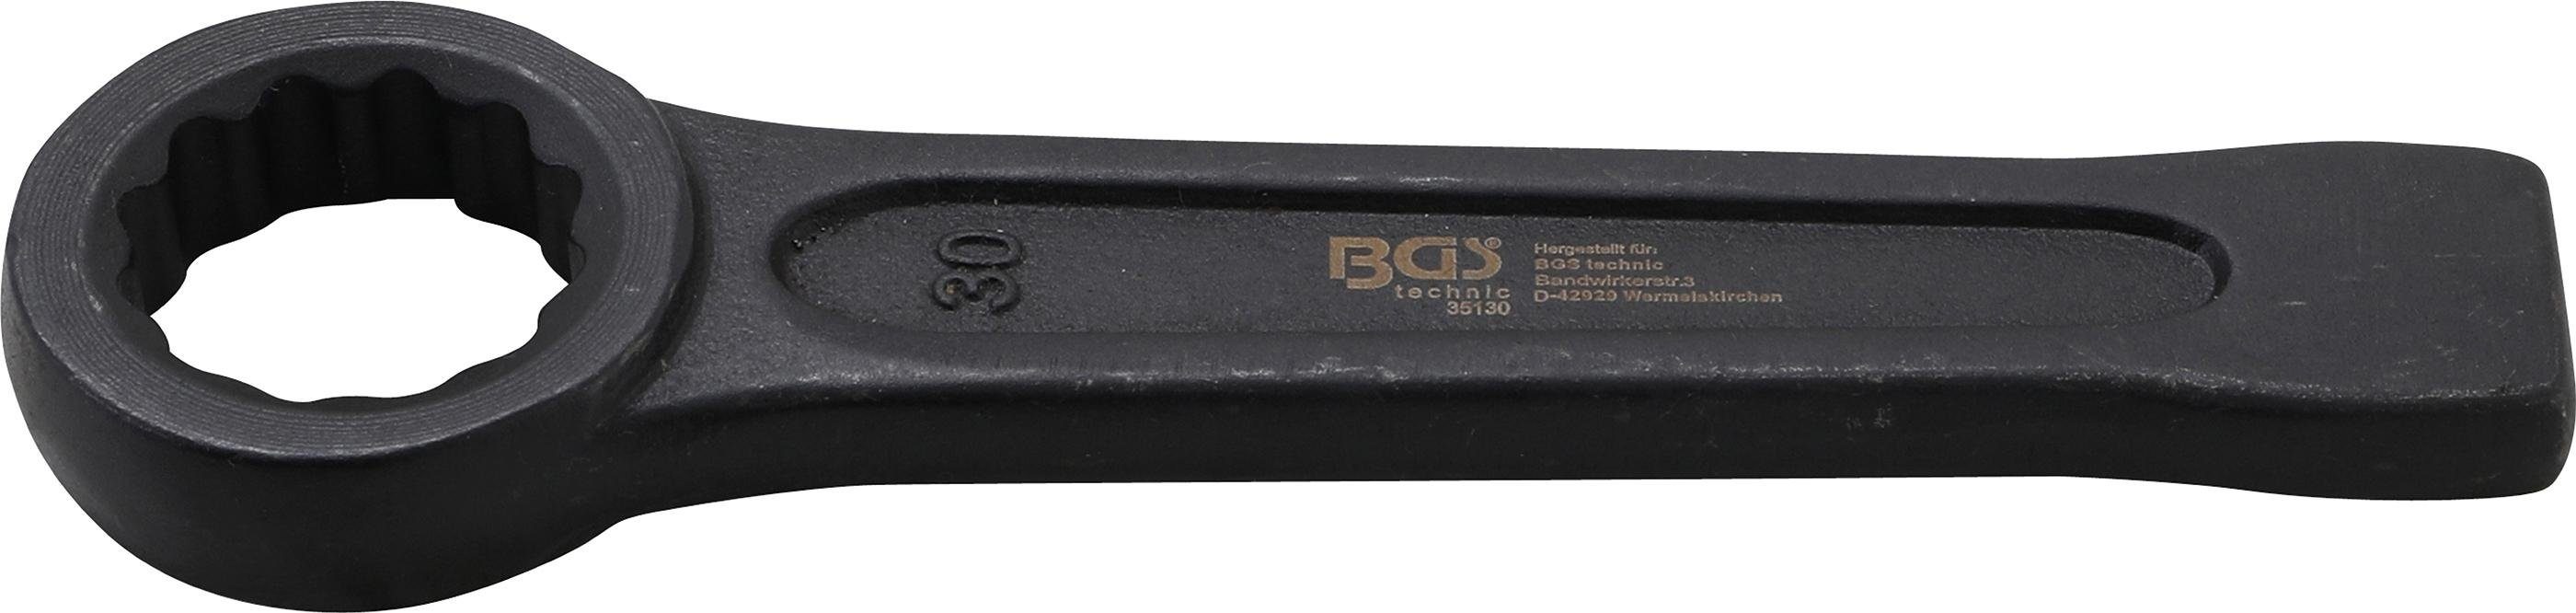 SW mm 30 Ringschlüssel BGS Schlag-Ringschlüssel, technic